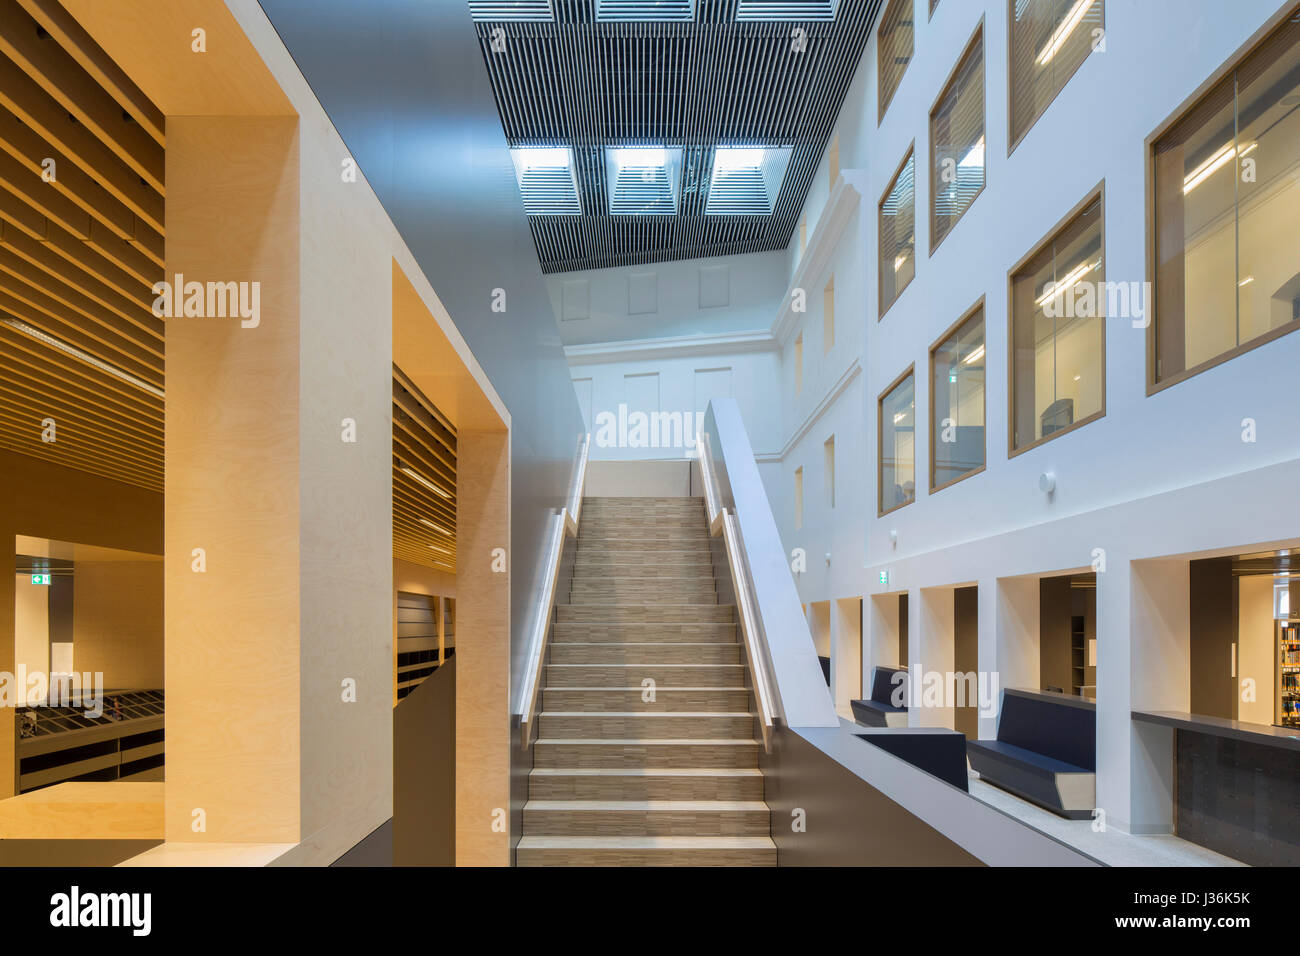 Lit à baldaquin en escalier cour centrale. Haus der Bildung - Bibliothèque Municipale Bonn, Bonn, Allemagne. Architecte : kleyer.koblitz.letzel.freivogel.architek Banque D'Images